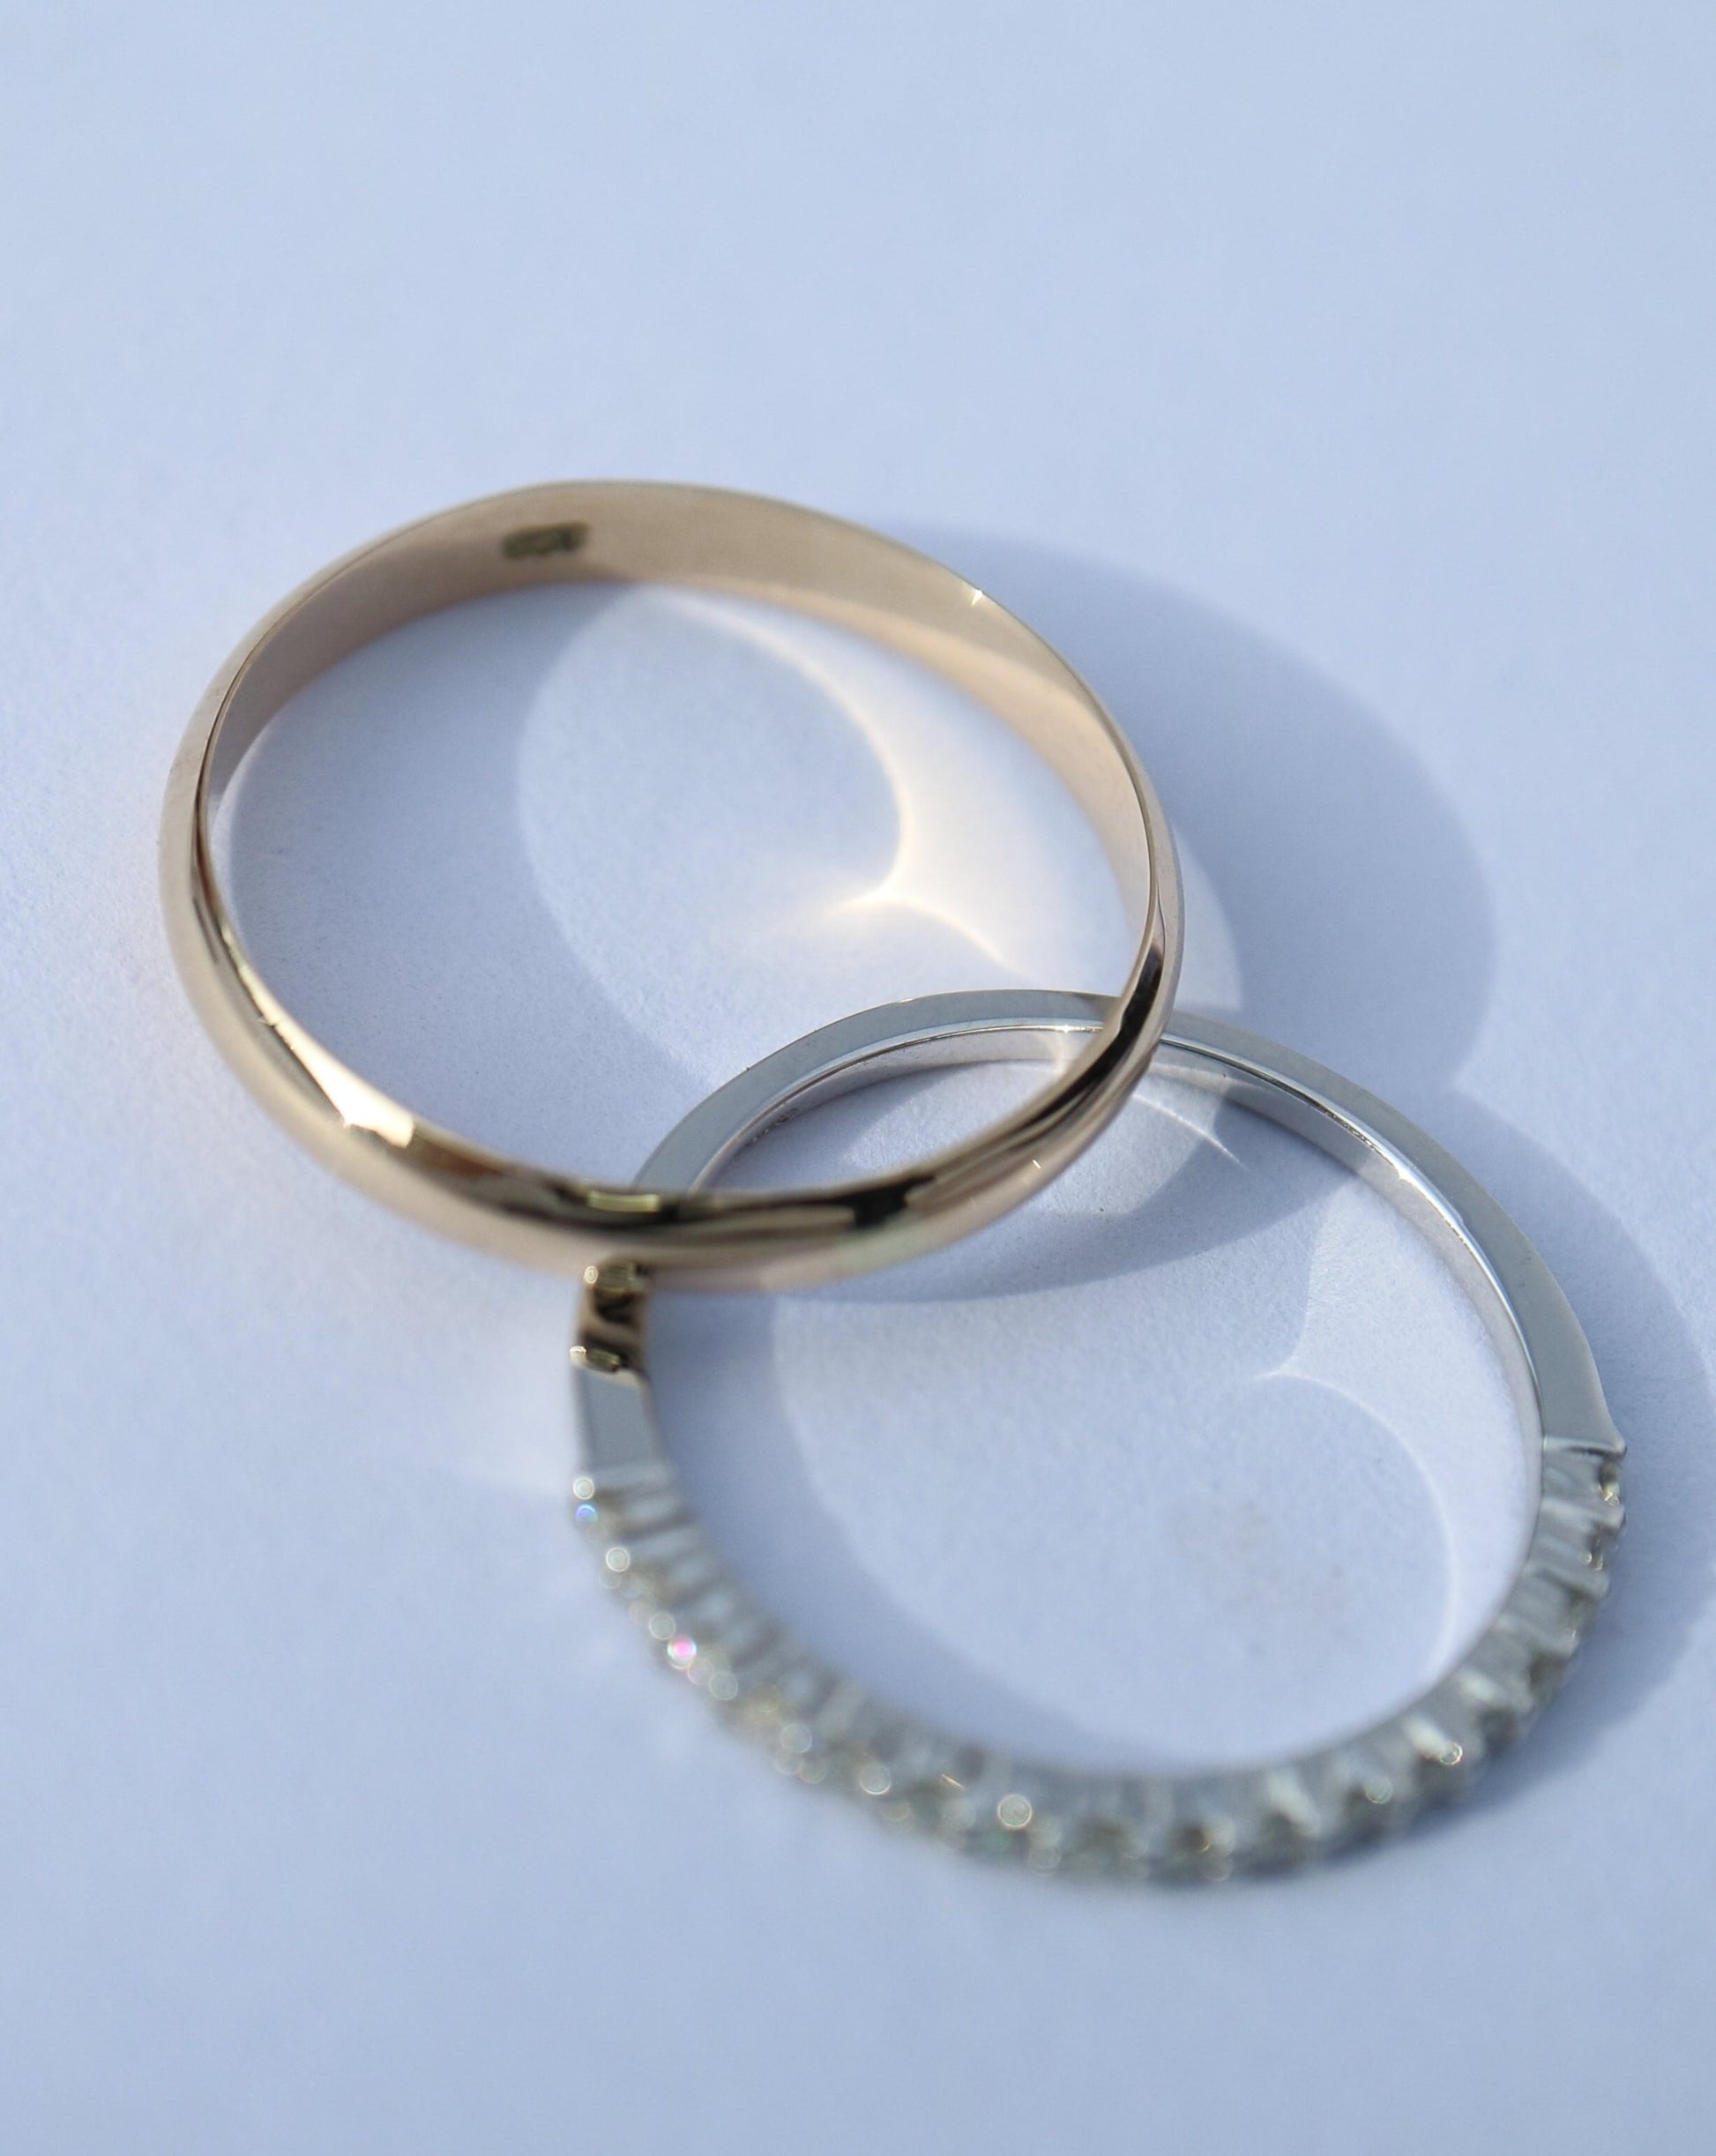 Men's wedding ring in rose gold